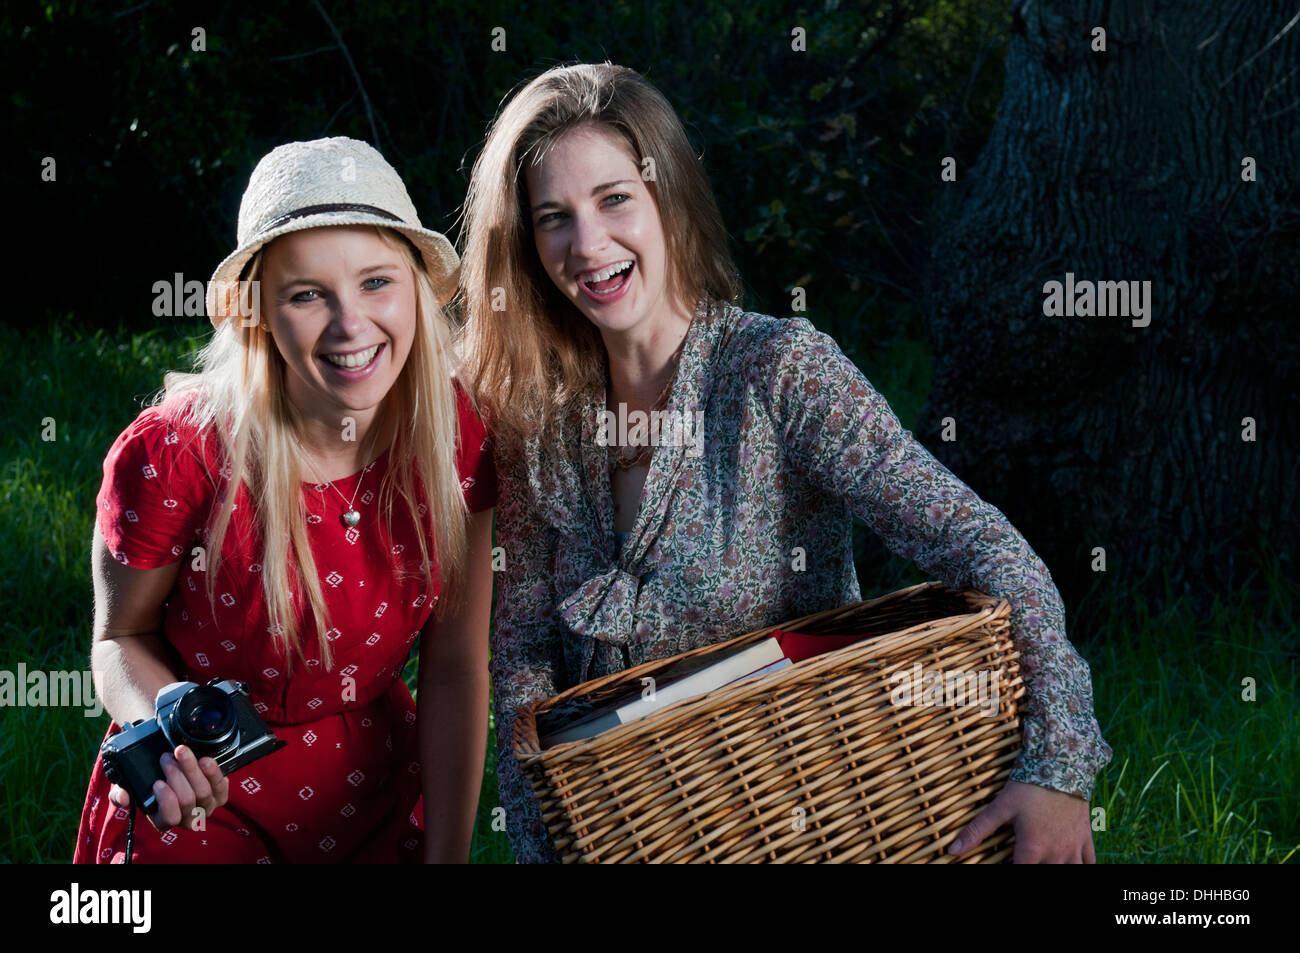 Las mujeres jóvenes llevar cesta de picnic Foto de stock